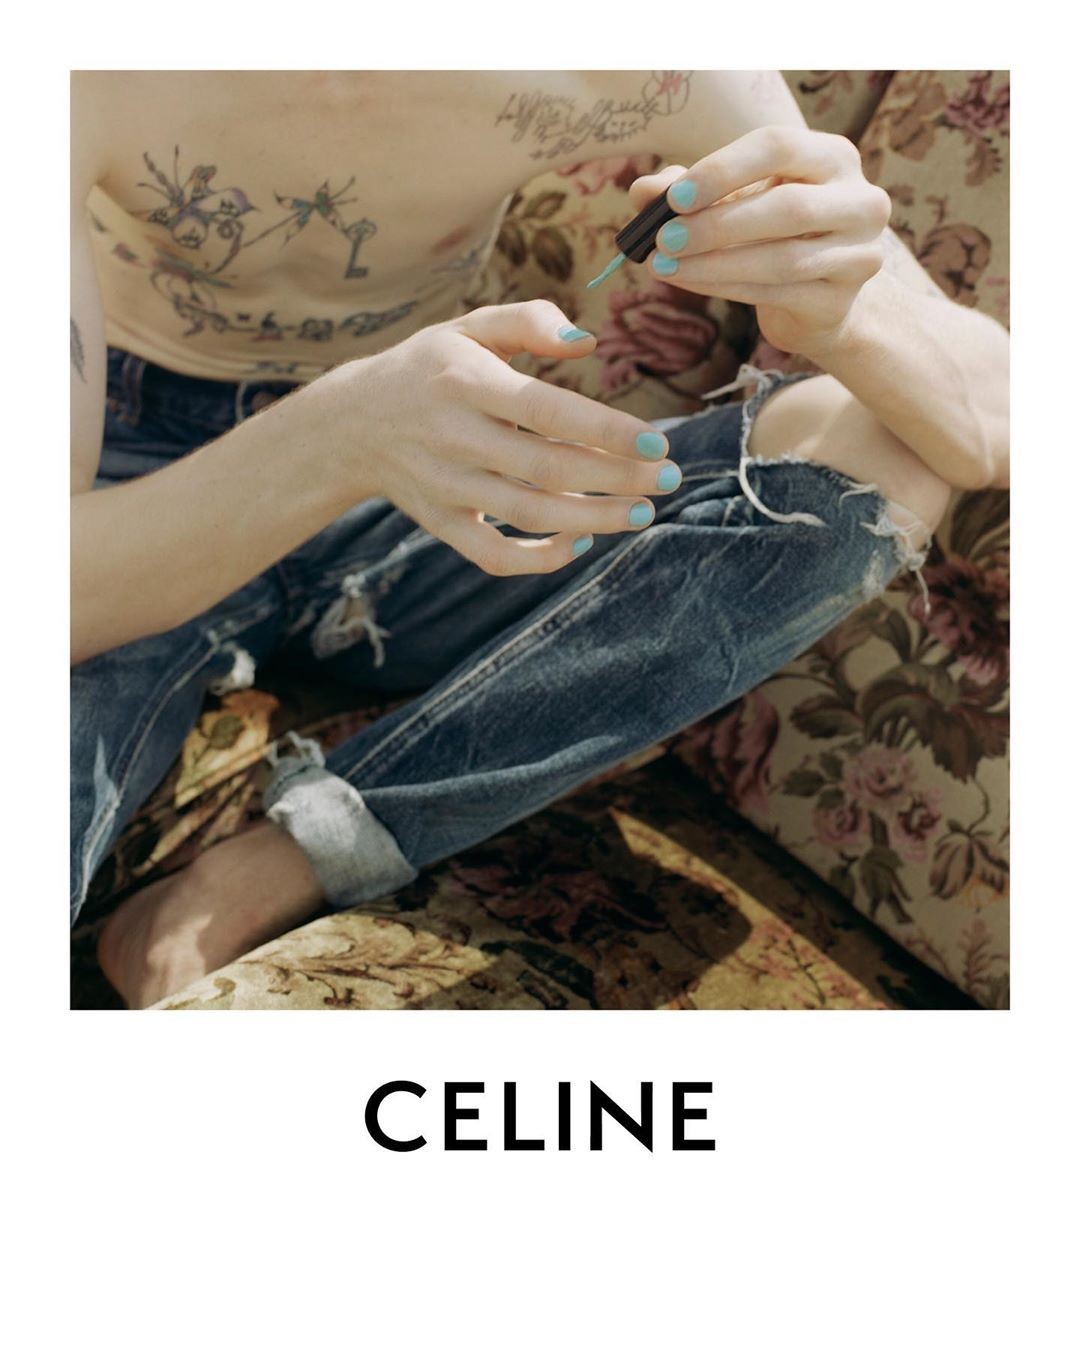 Celine aposta em nova tendência beauté para homens. Vem ver!